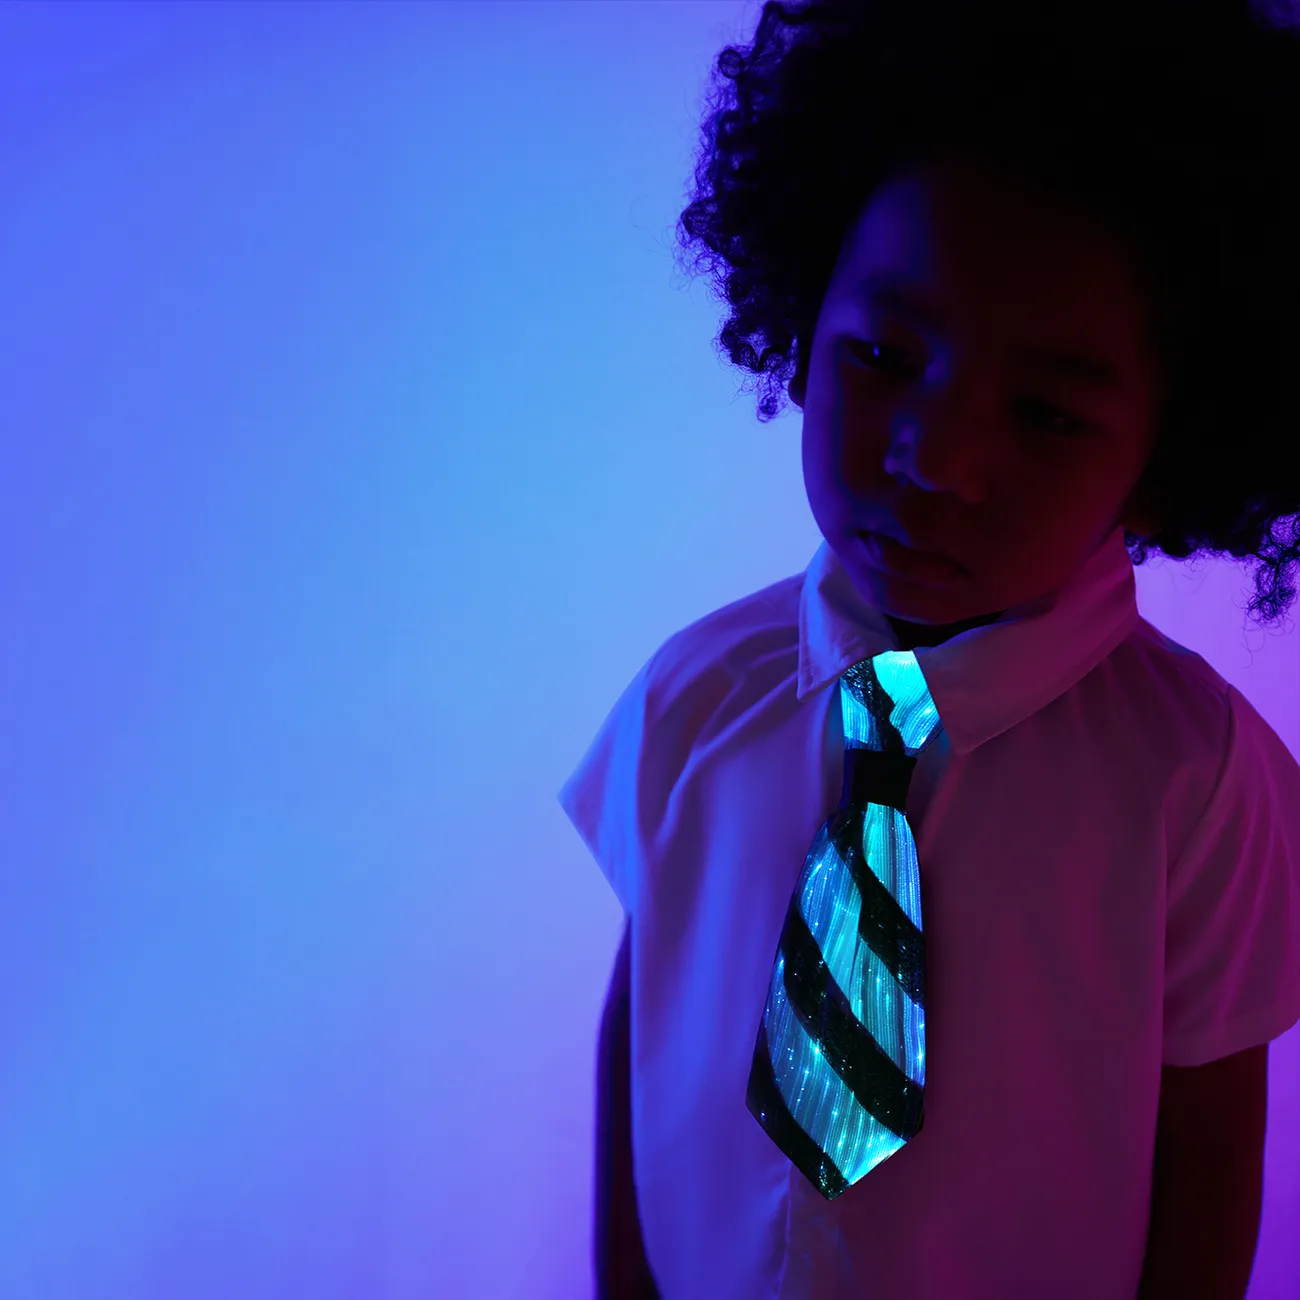 cravate pré-nouée en maille à rayures illuminées pour enfant garçon Noir/ Blanc big image 1